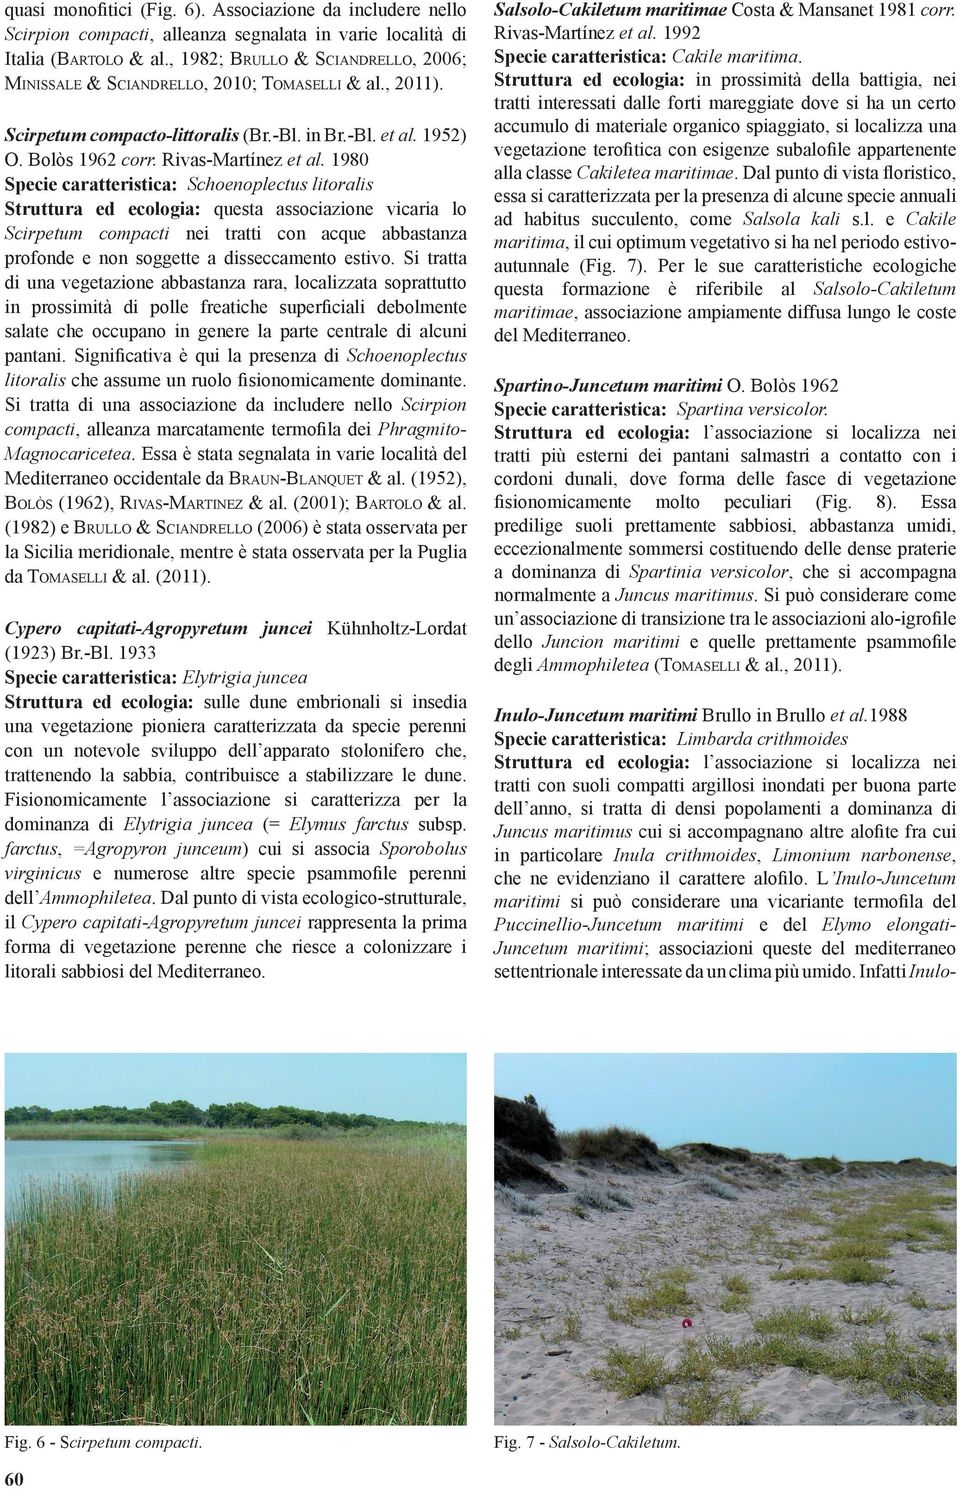 1980 Specie caratteristica: Schoenoplectus litoralis Struttura ed ecologia: questa associazione vicaria lo Scirpetum compacti nei tratti con acque abbastanza profonde e non soggette a disseccamento